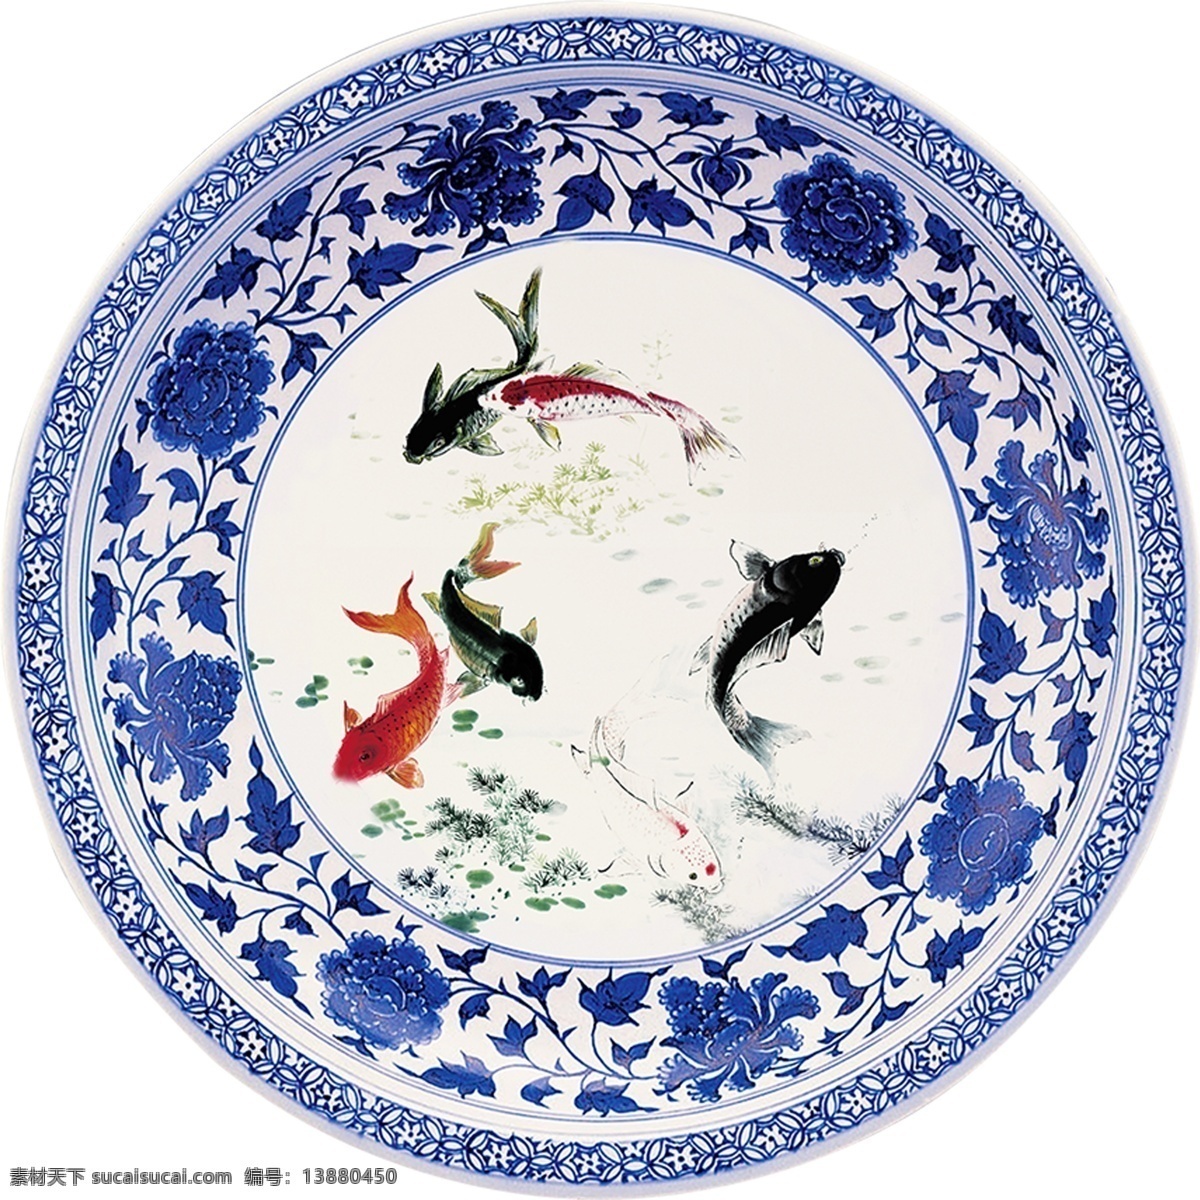 青花圆盘 中式 圆盘 锦鲤 年年有余 圆桌面 装饰画 蓝色 文化艺术 传统文化